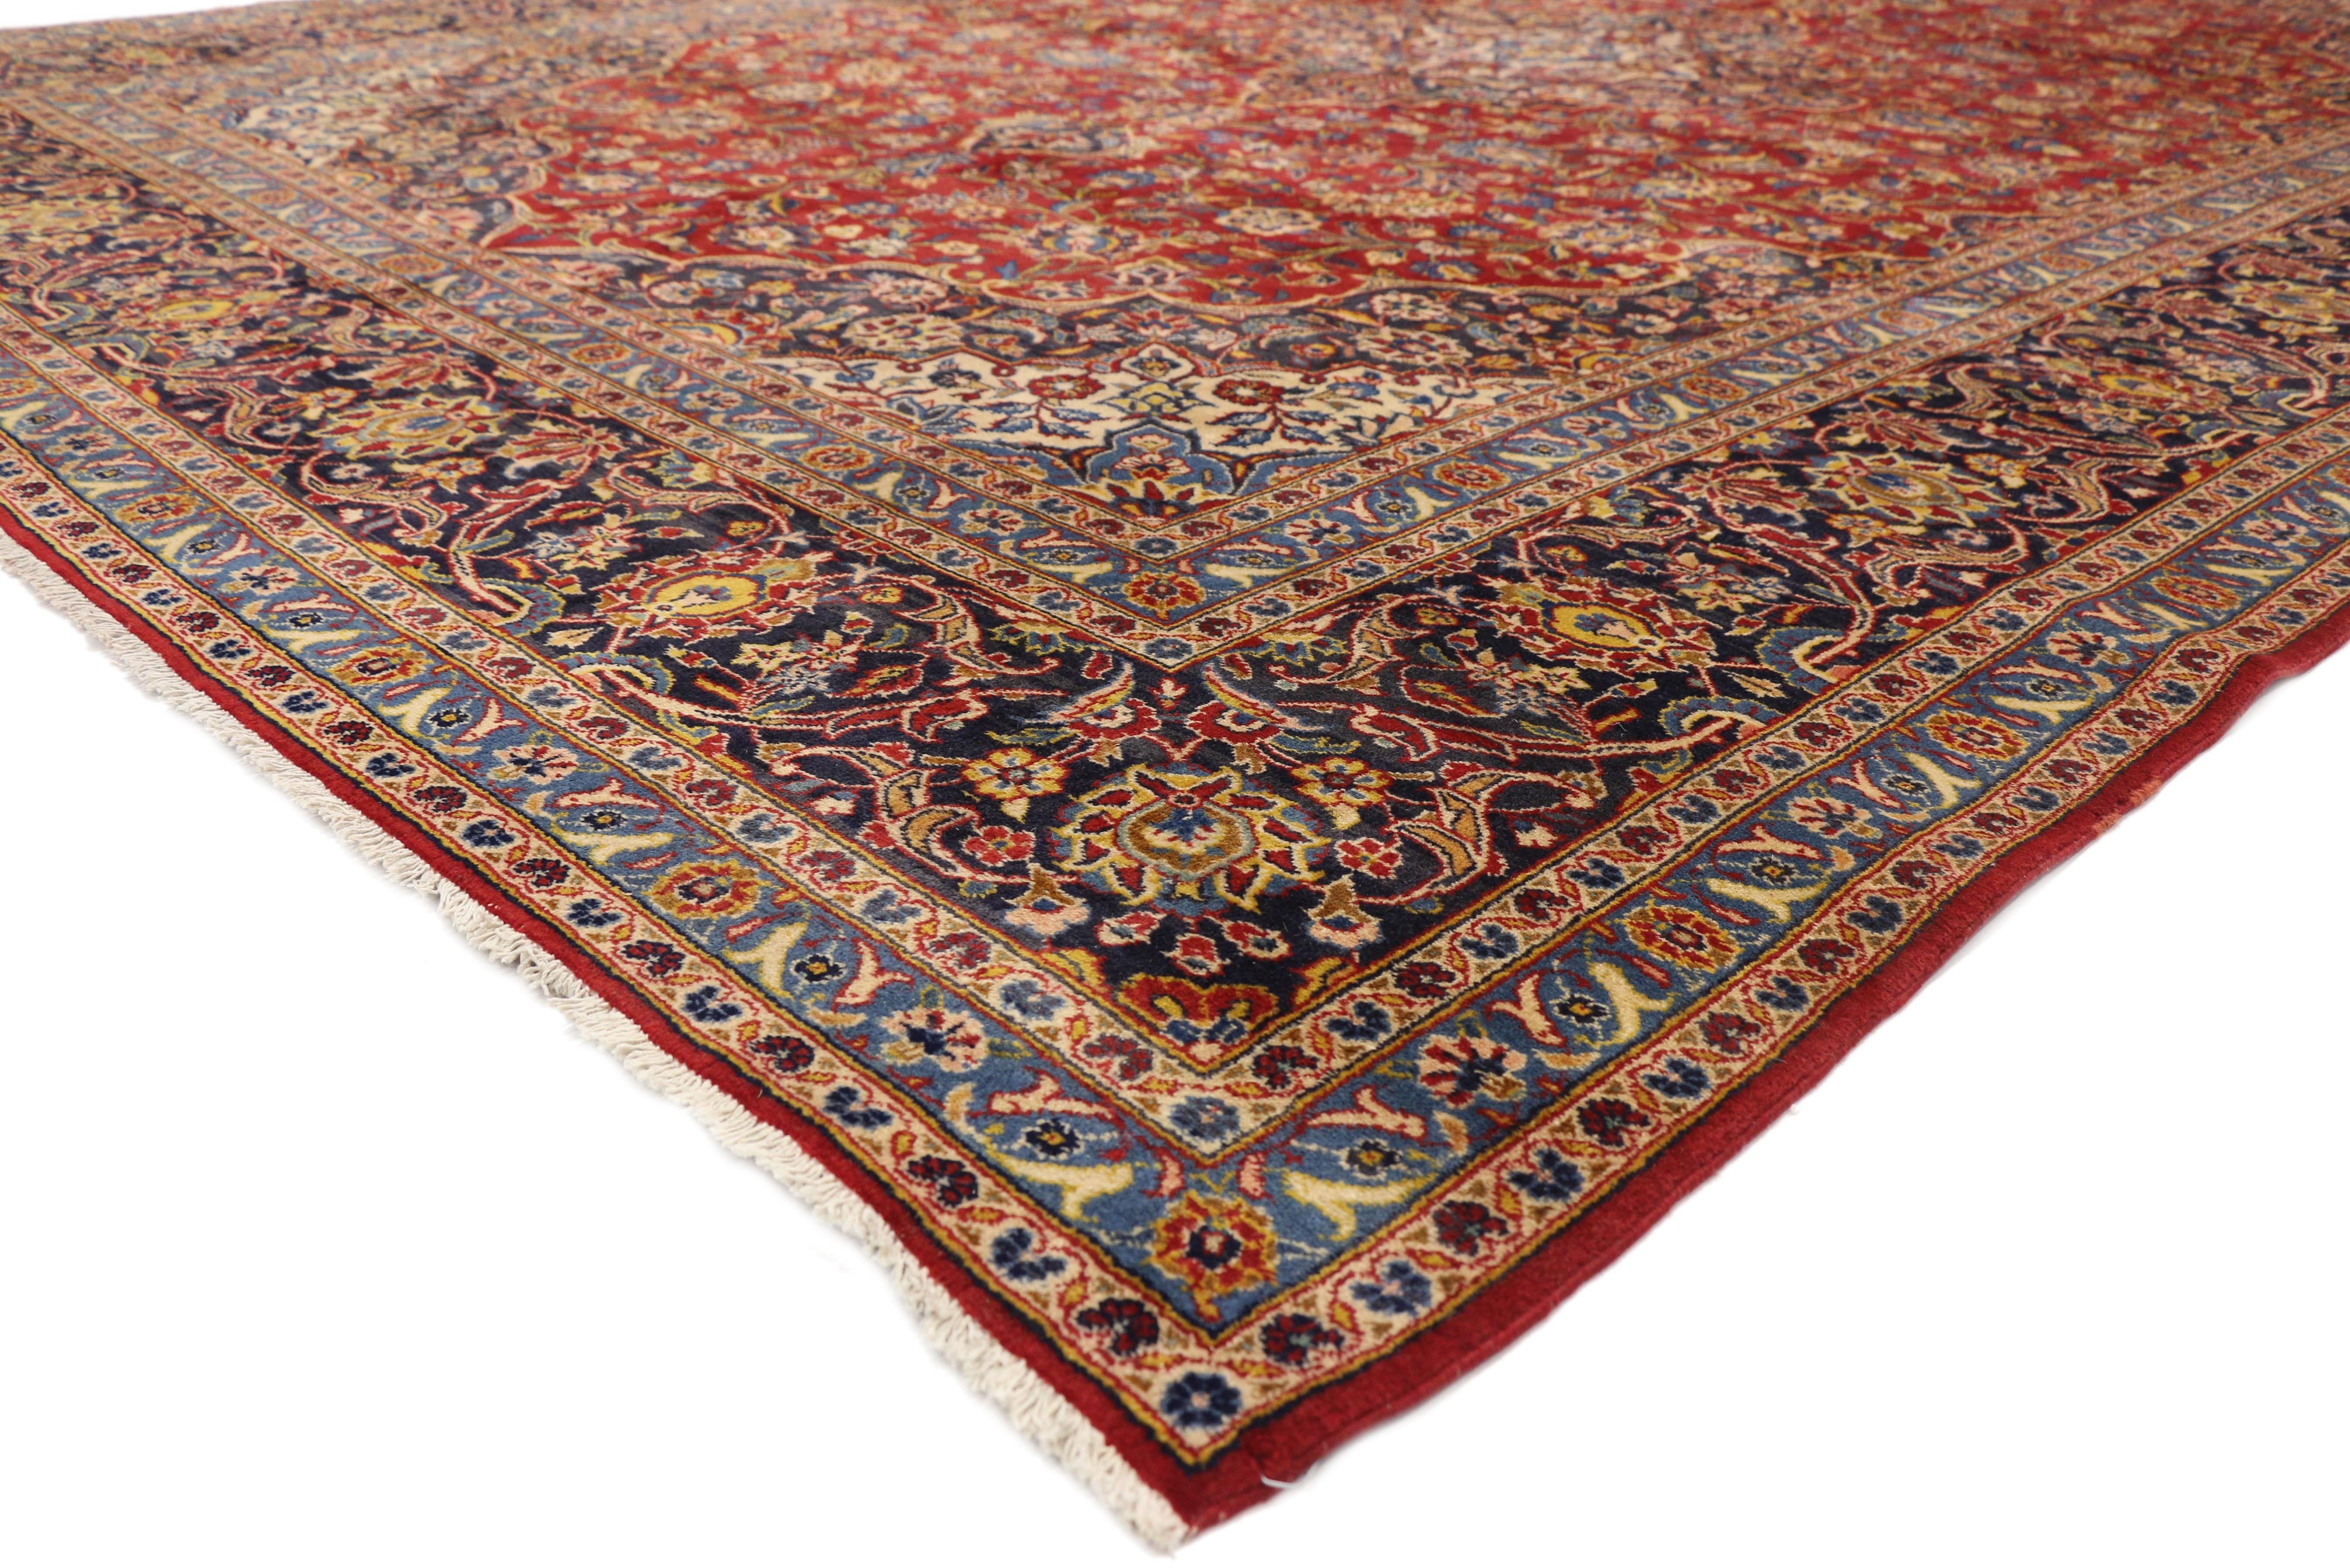 76311, alter persischer Kashan-Teppich im neoklassischen Stil. Dieser handgeknüpfte alte persische Kaschan-Teppich aus Wolle mit einem Standard-Kaschan-Medaillon aus gestuften und gelappten Attributen ist mit länglichen, palmettenförmigen Anhängern